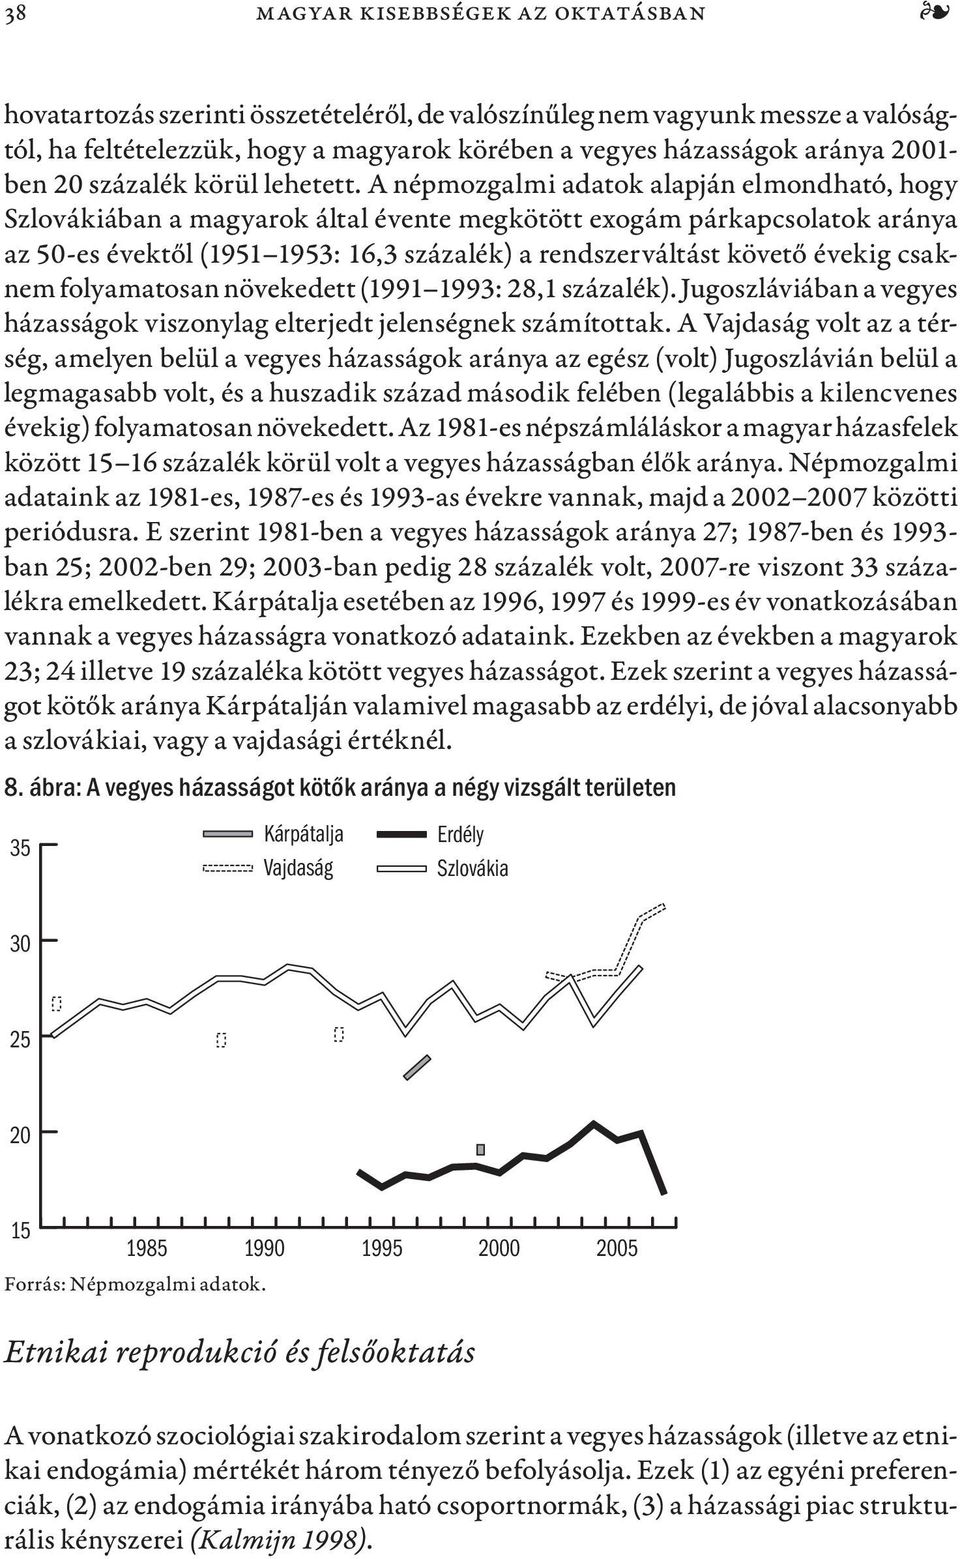 A népmozgalmi adatok alapján elmondható, hogy Szlovákiában a magyarok által évente megkötött exogám párkapcsolatok aránya az 50-es évektől (1951 1953: 16,3 százalék) a rendszerváltást követő évekig